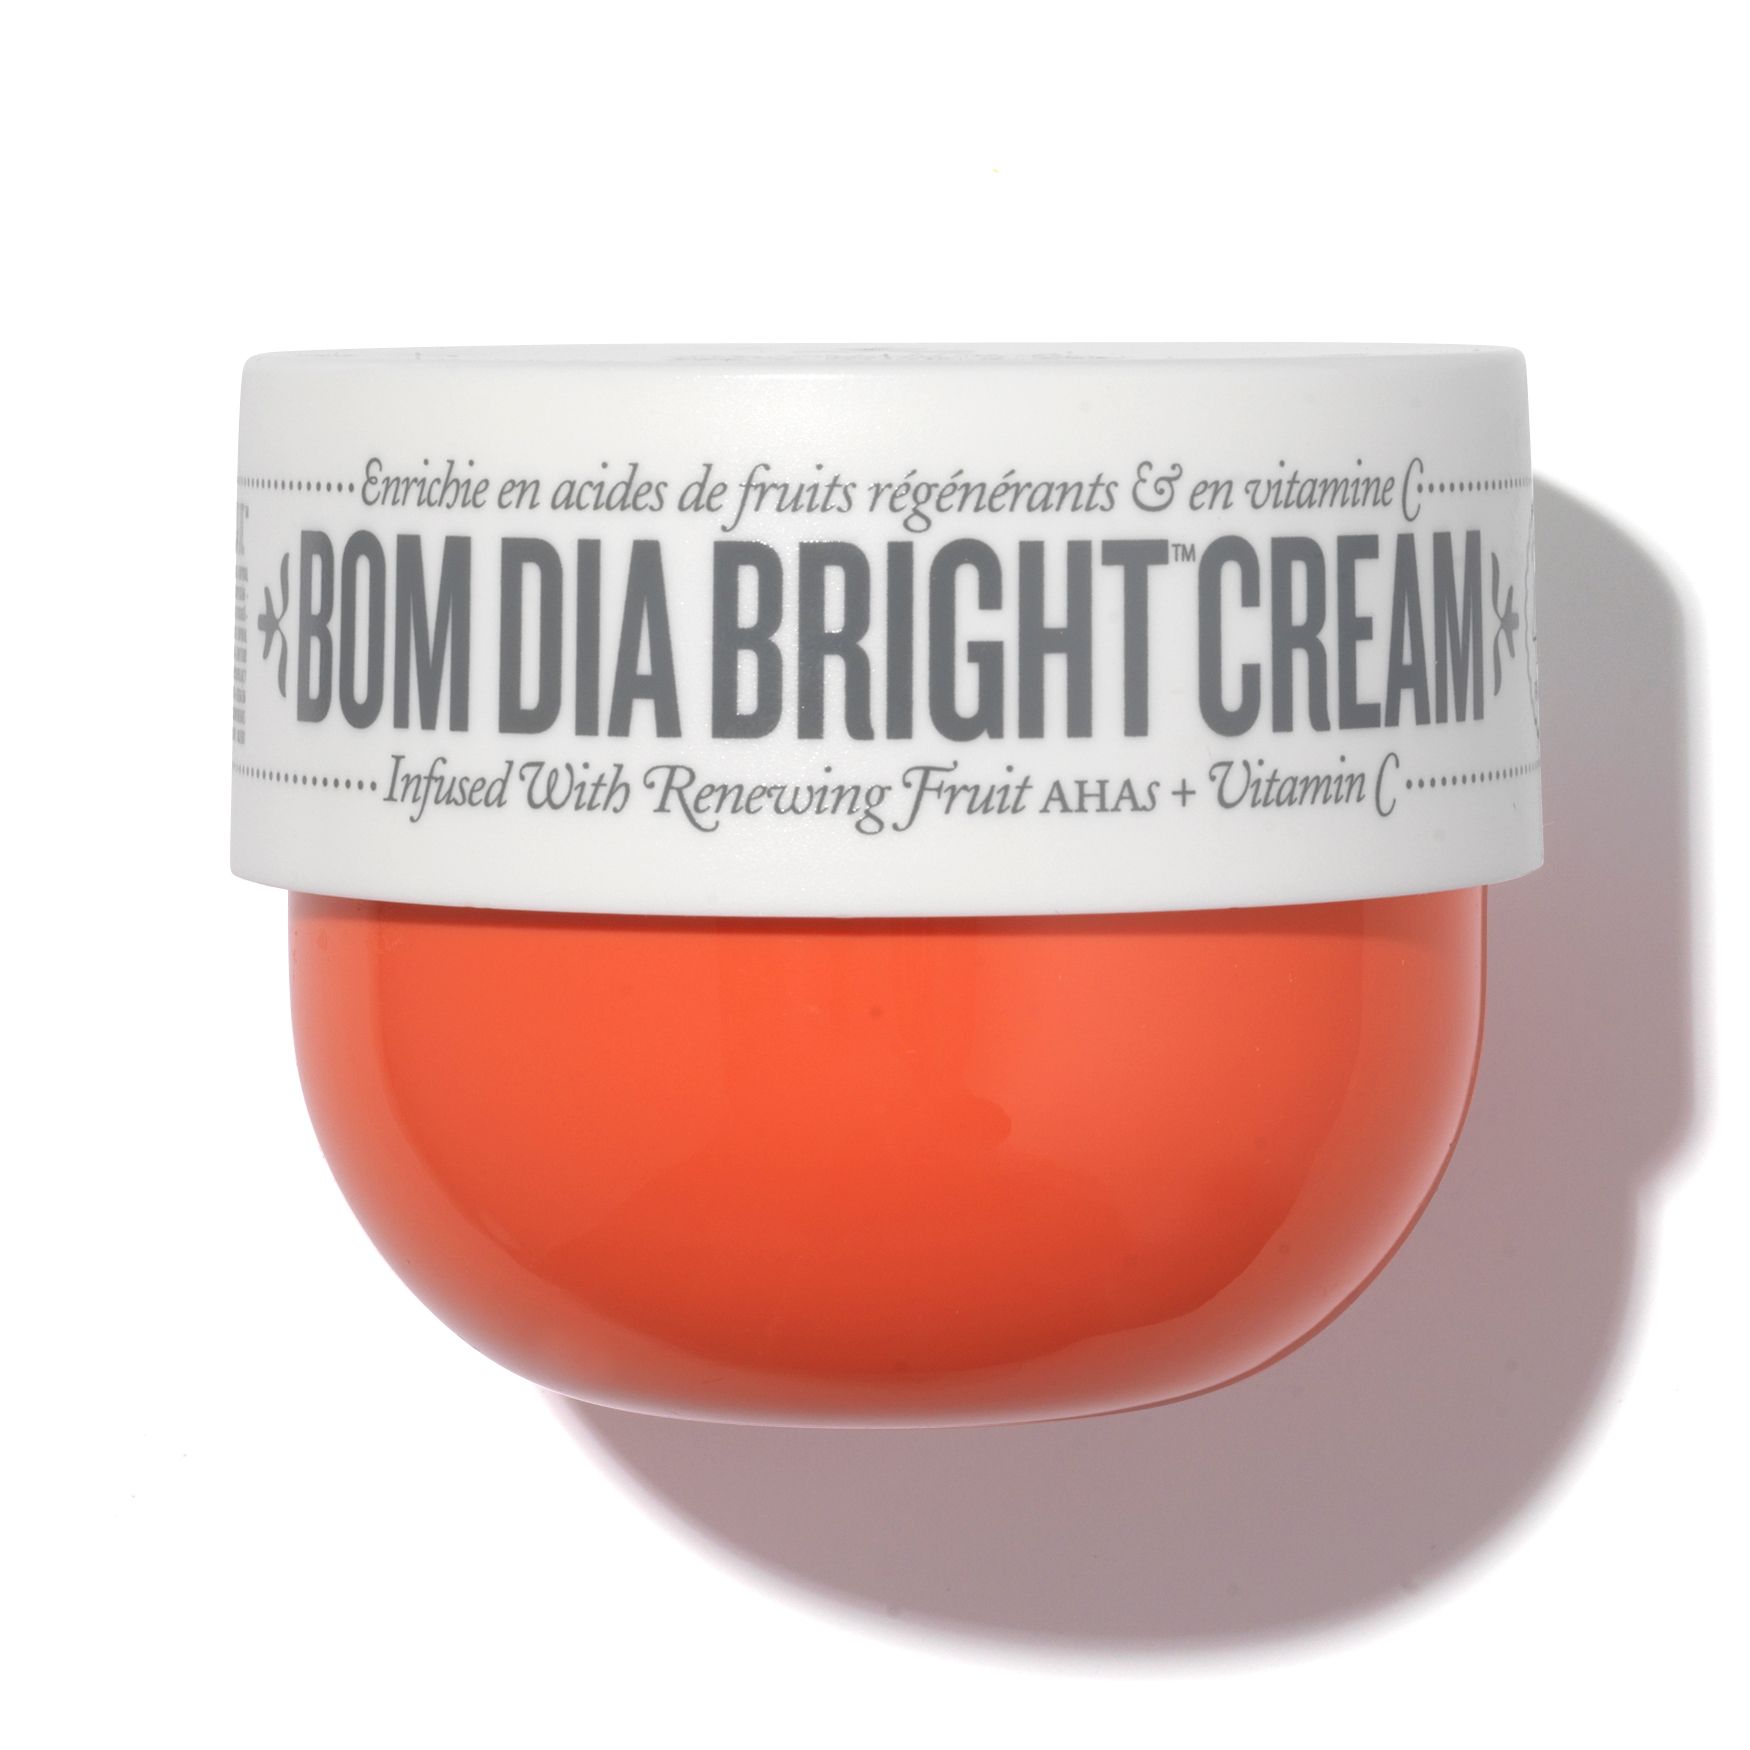 Bom Dia Bright Cream | Space NK - UK